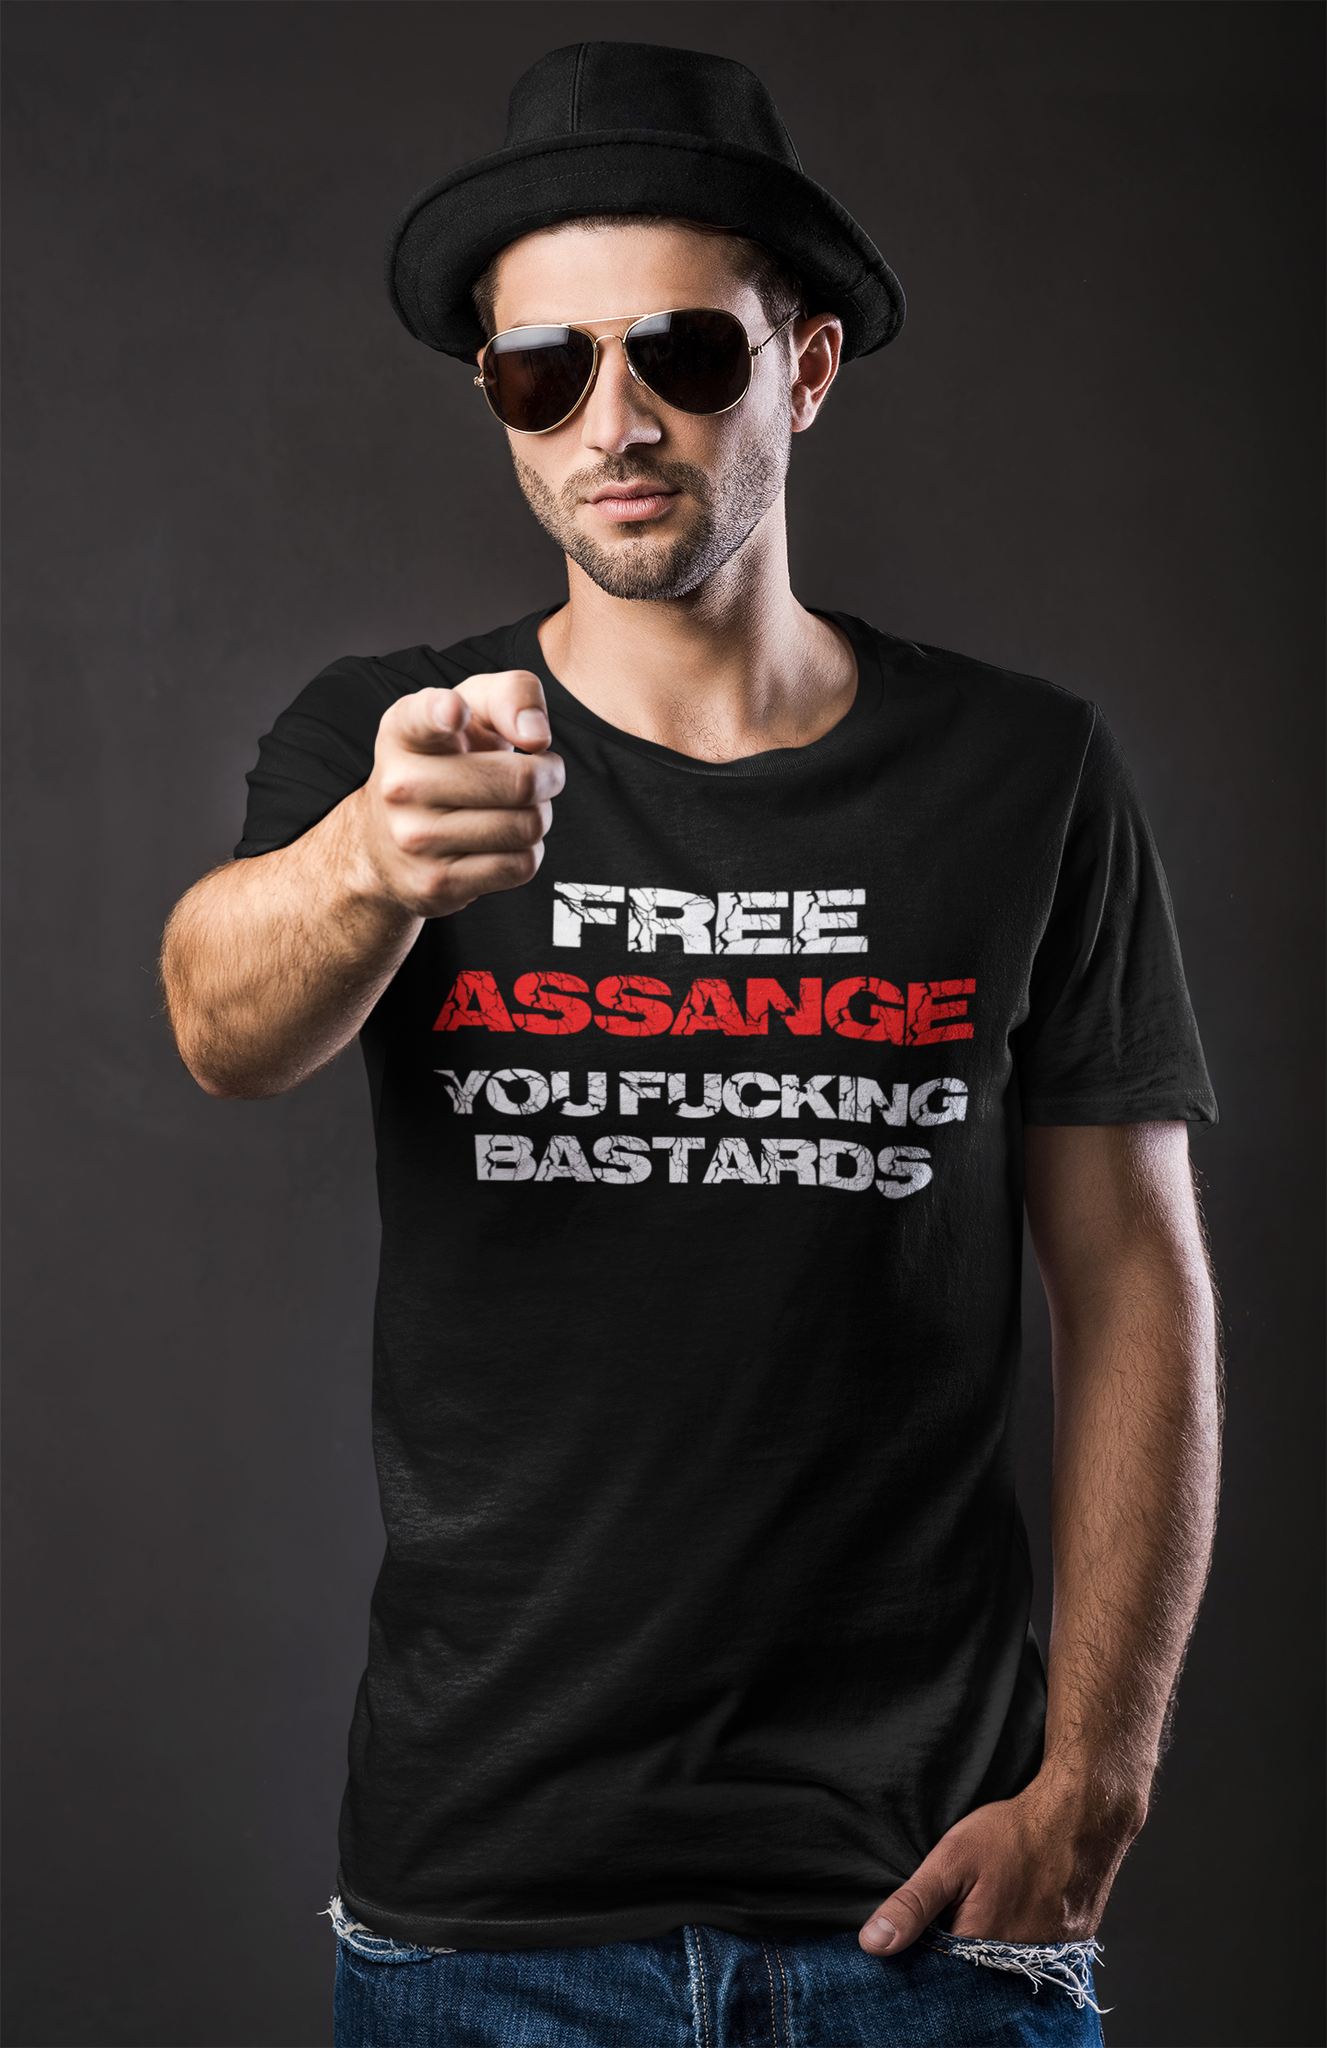 Herr T-shirt i flera färger med texten "Free Assange" och ett budskap om frihet för yttrandefrihet